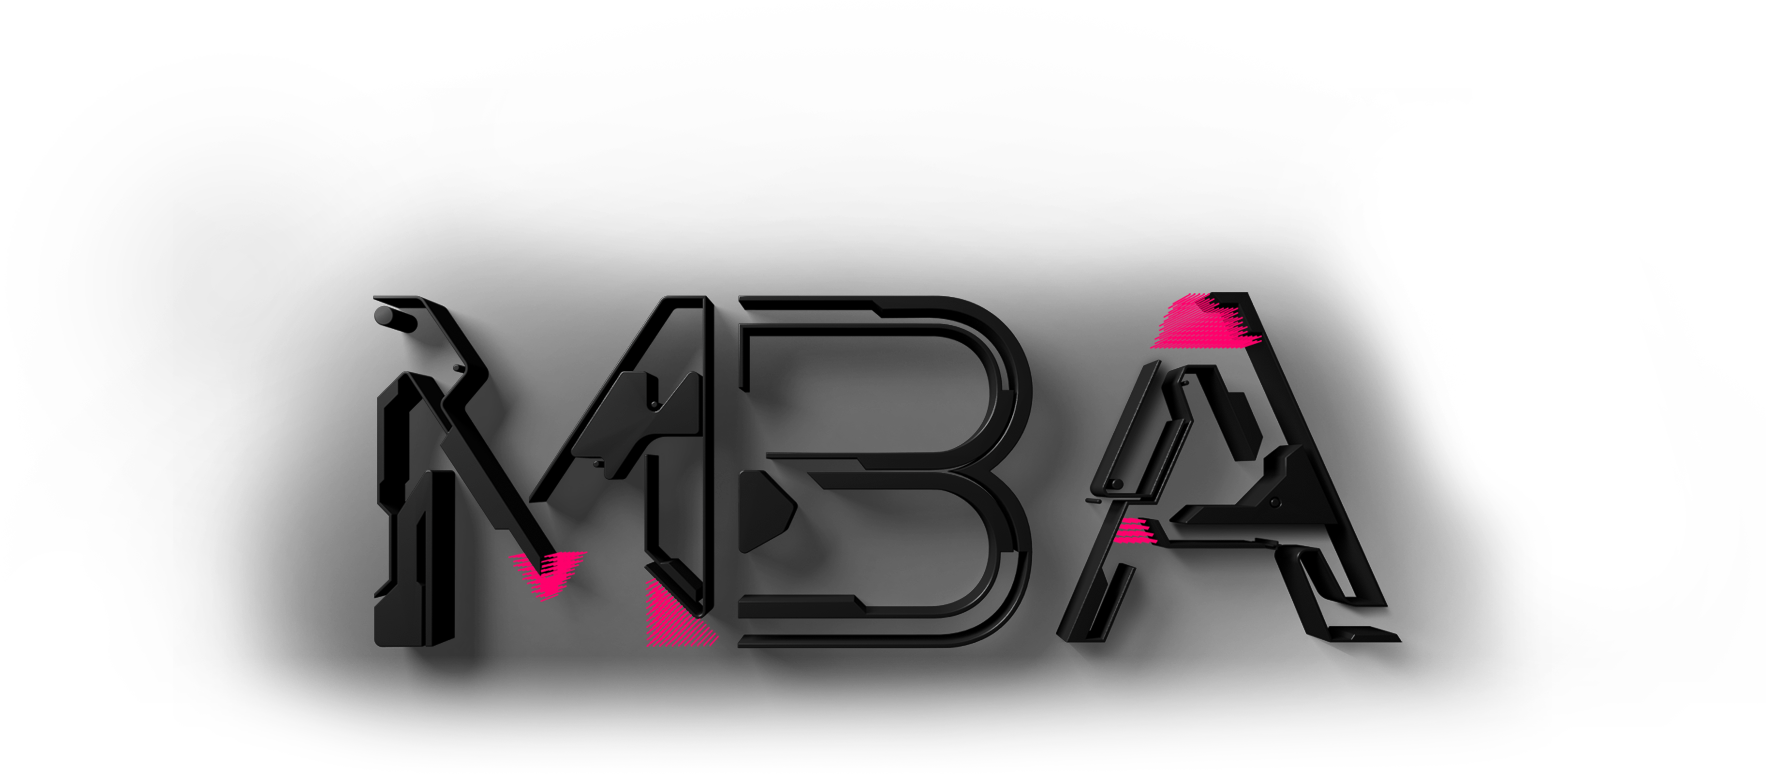 Logo MBA